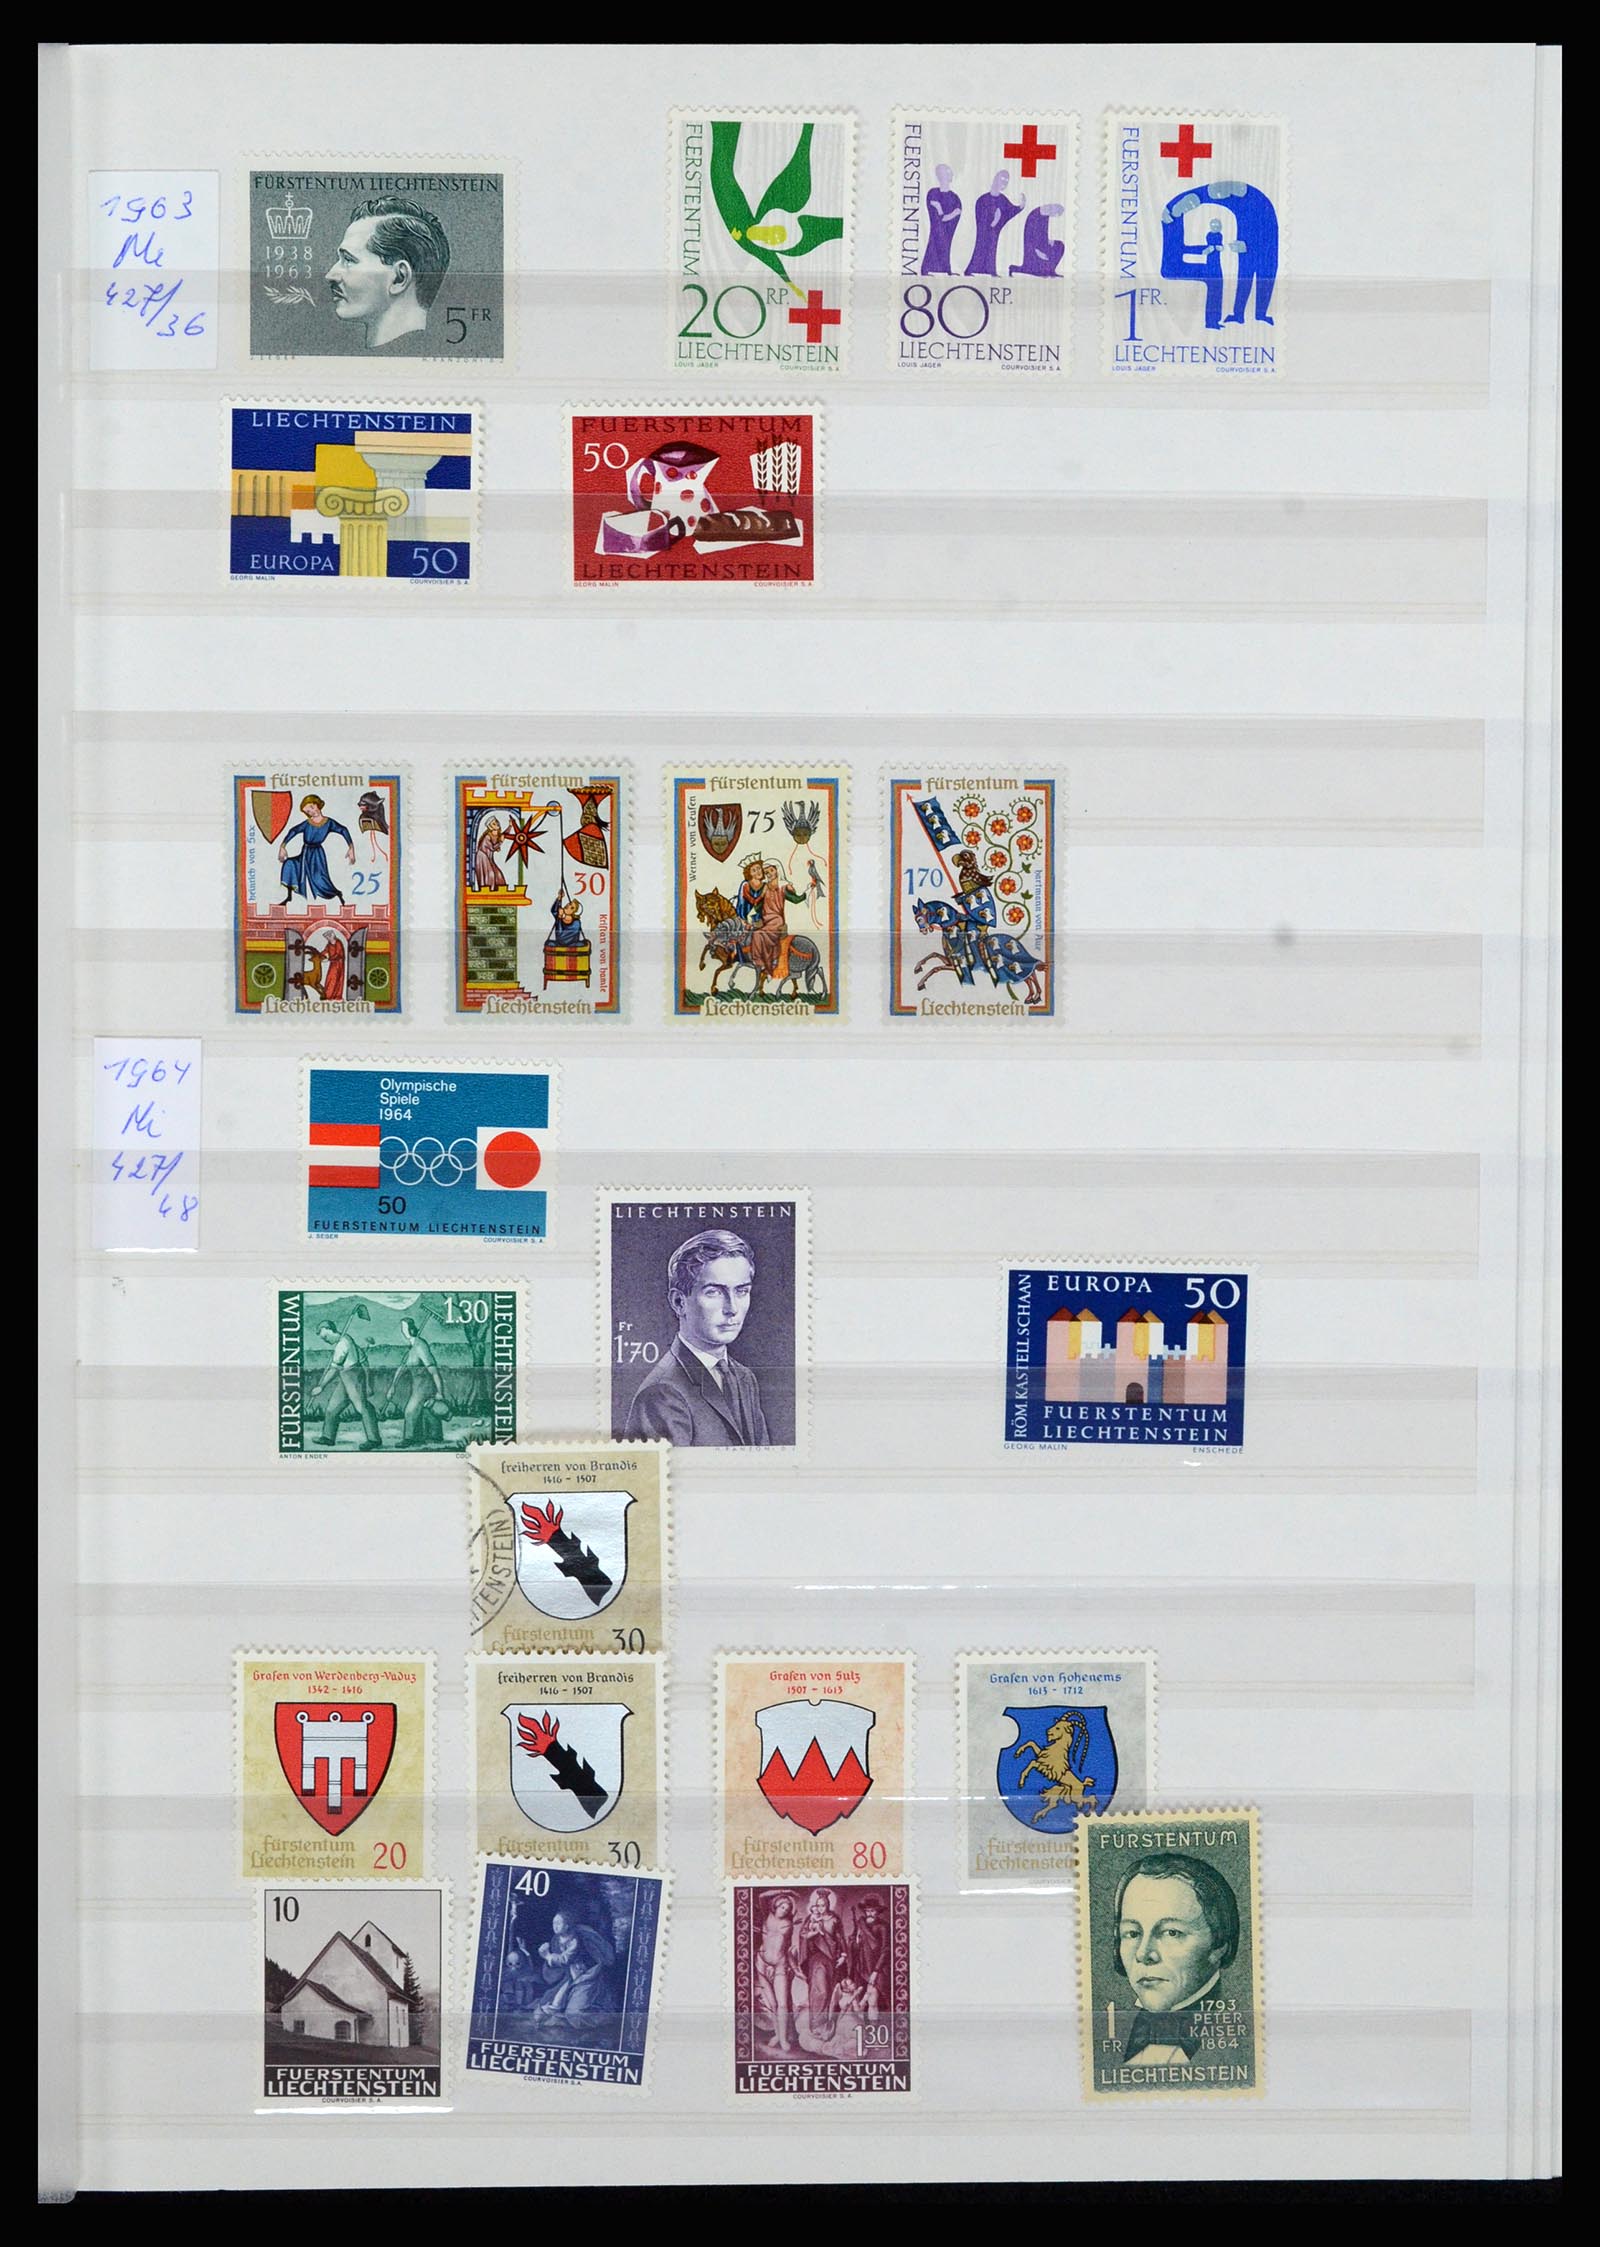 36899 014 - Stamp collection 36899 Liechtenstein 1930-2005.